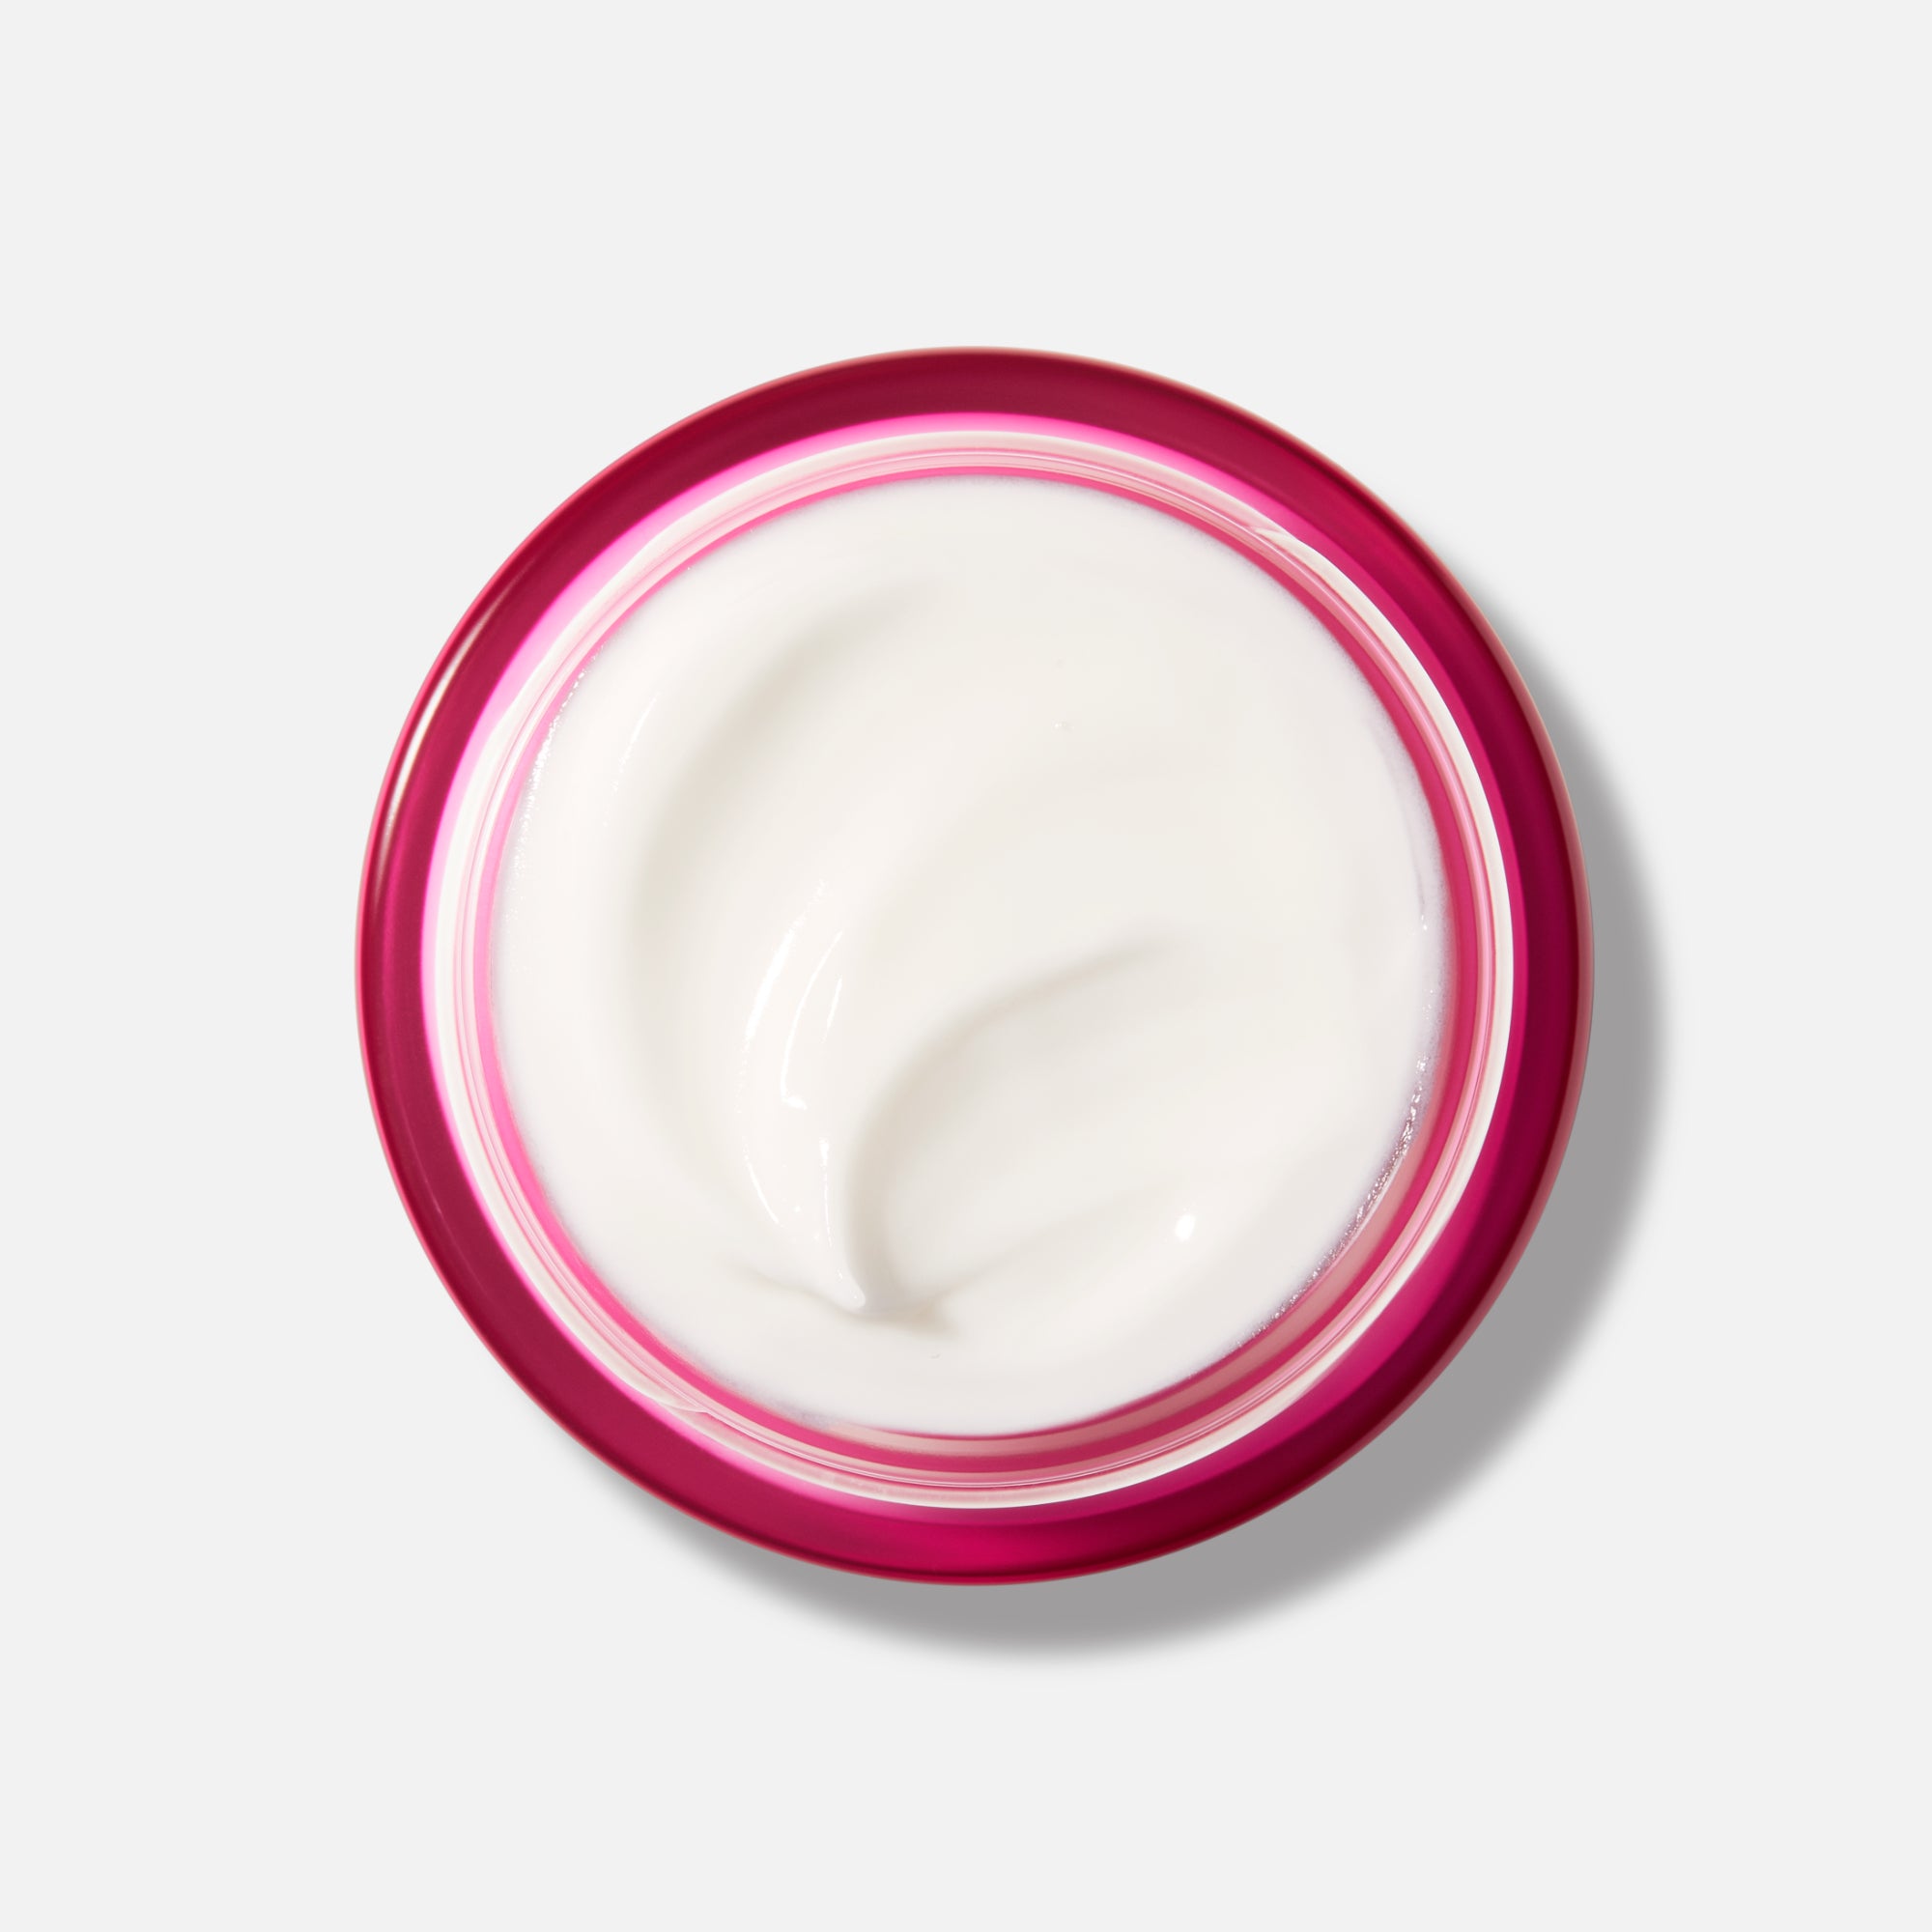 Nuxe - Merveillance Lift - Crema de día 50 ml - ebeauty